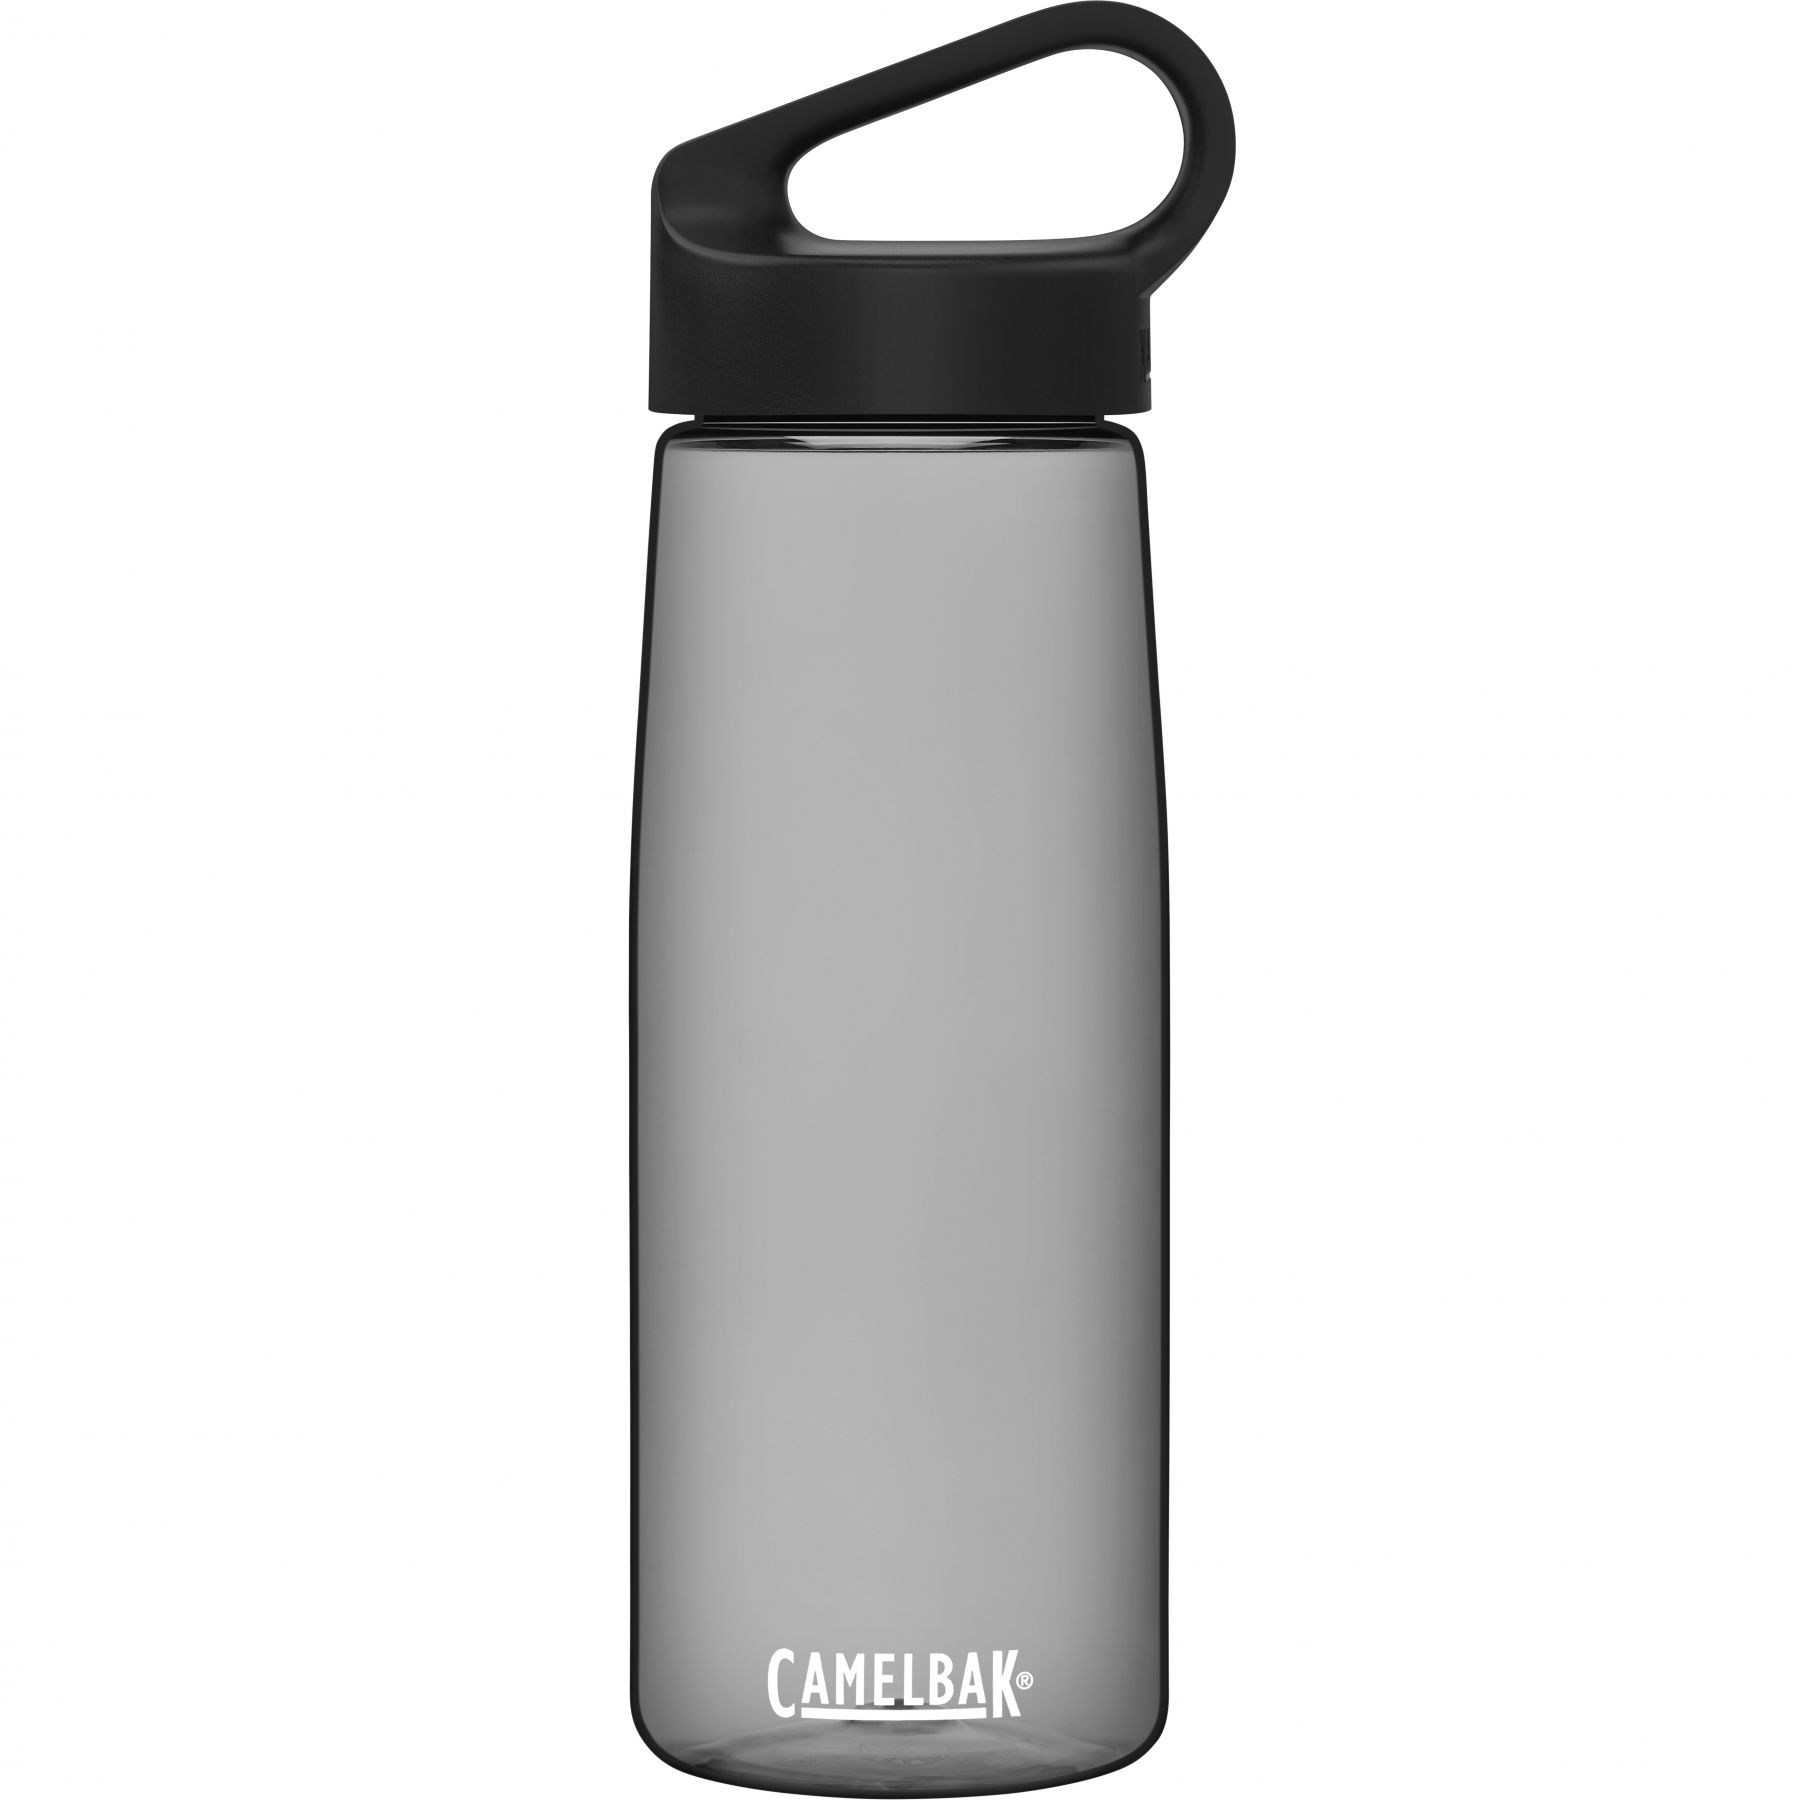 Brug CamelBak Carry Cap, drikkedunk, 0,75L, mørkegrå til en forbedret oplevelse